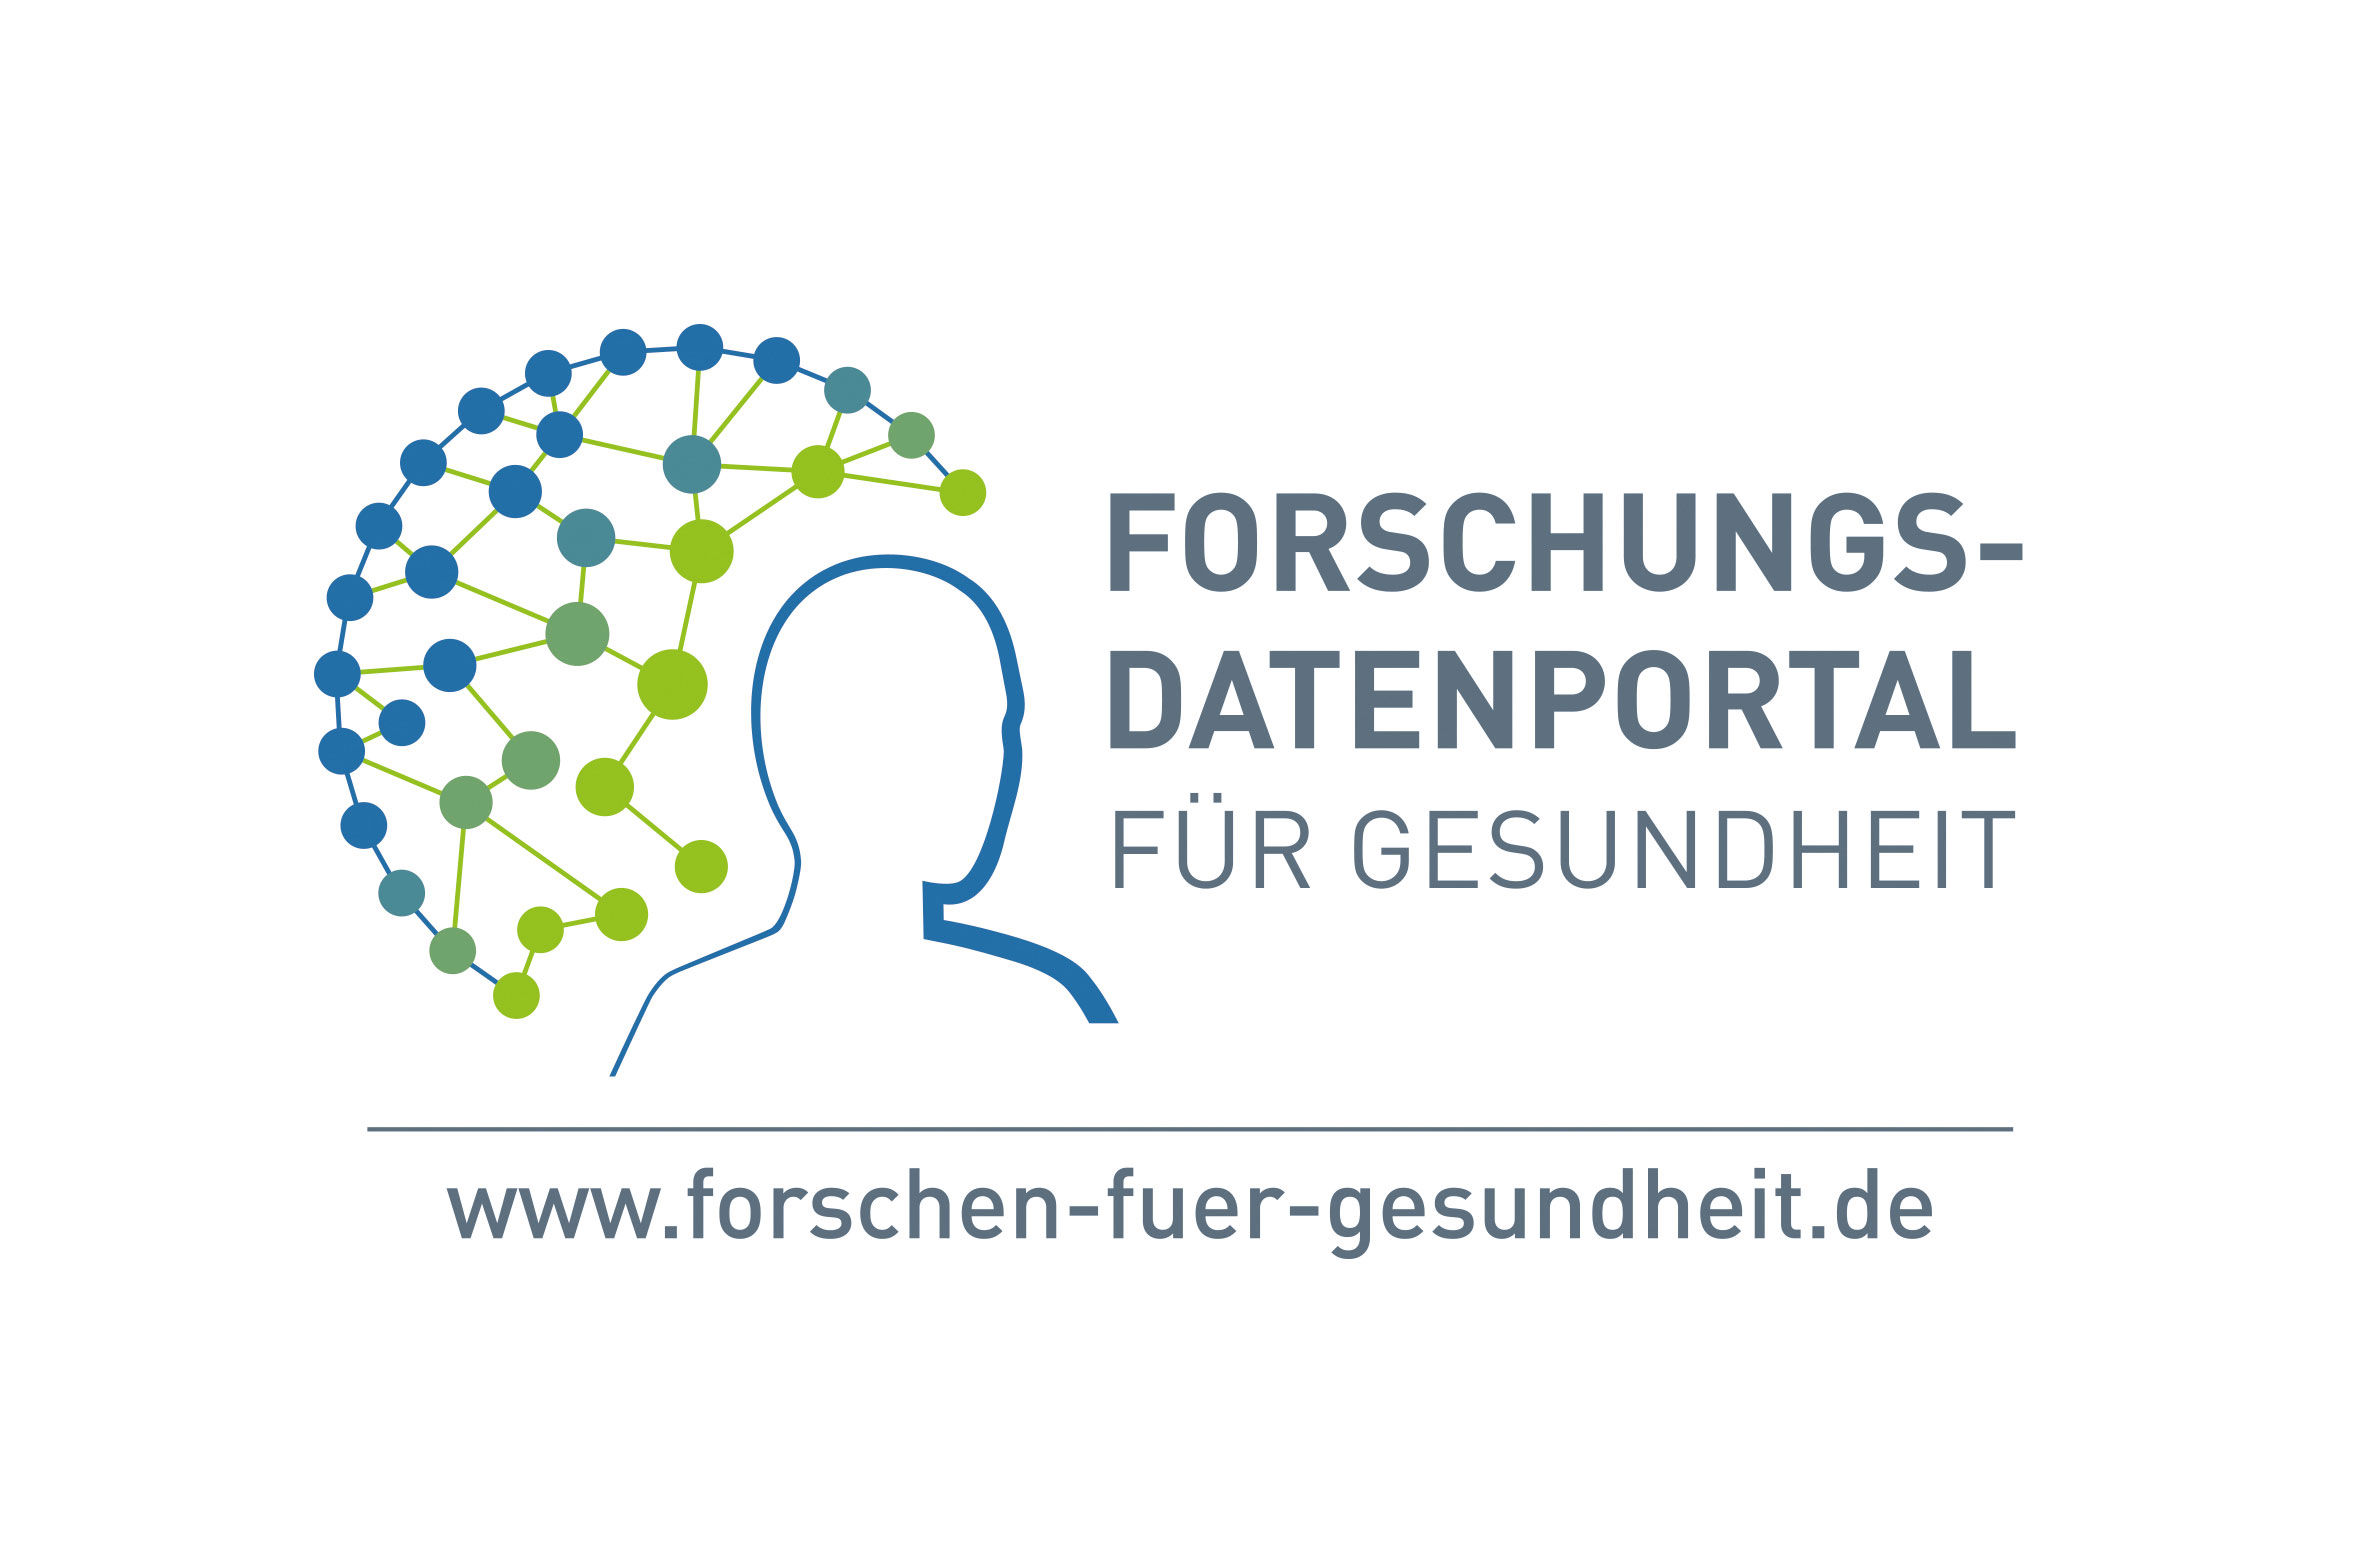 Deutsches Forschungsdatenportal für Gesundheit